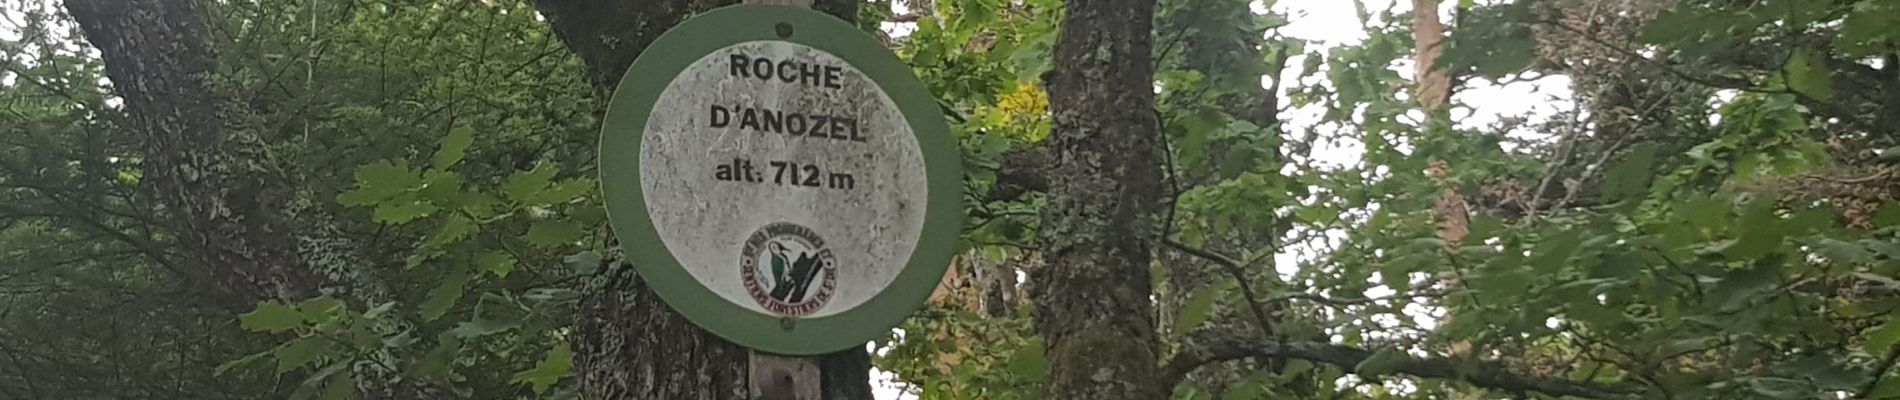 Percorso Sentiero Taintrux - 2020 08 16  Roche d'Anozel  - Photo